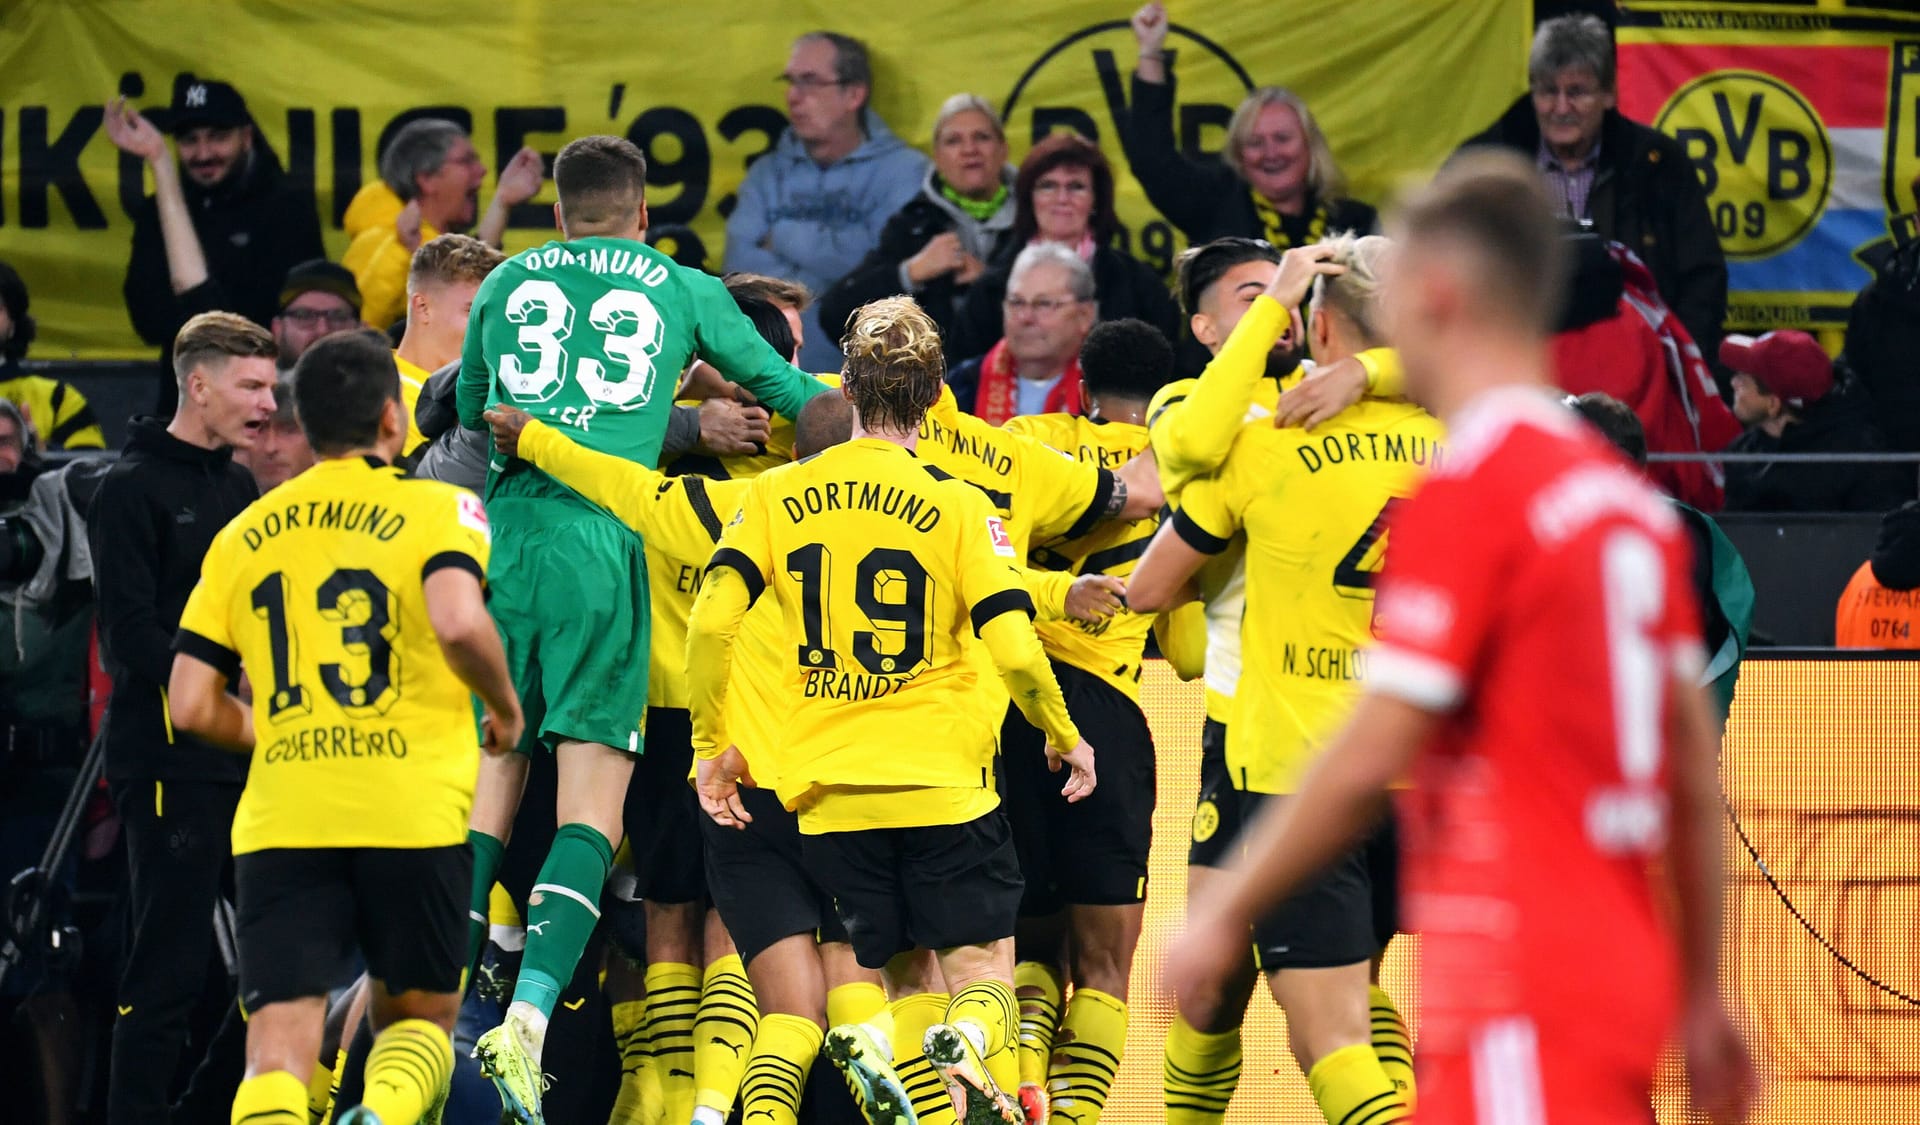 Jubel bei Borussia Dortmund: Der BVB konnte sich gegen die Bayern am Ende ein 2:2 erspielen. Die Einzelkritik.